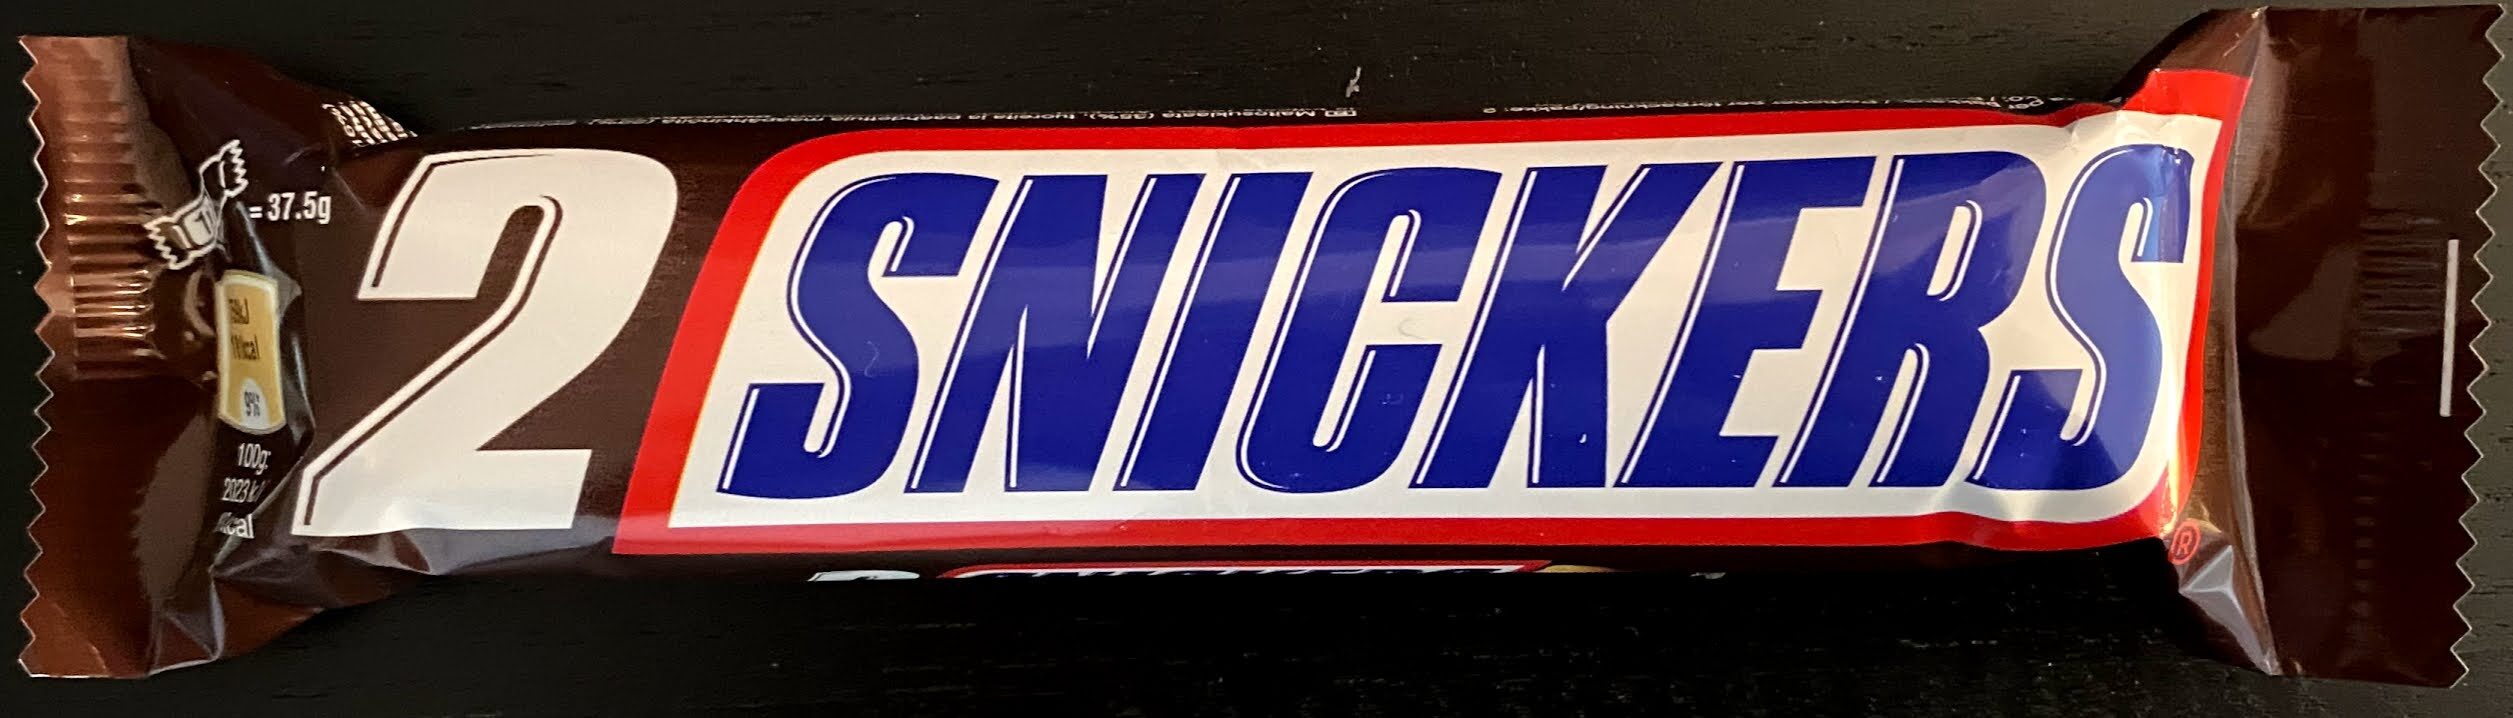 Snickers x2 - نتاج - en